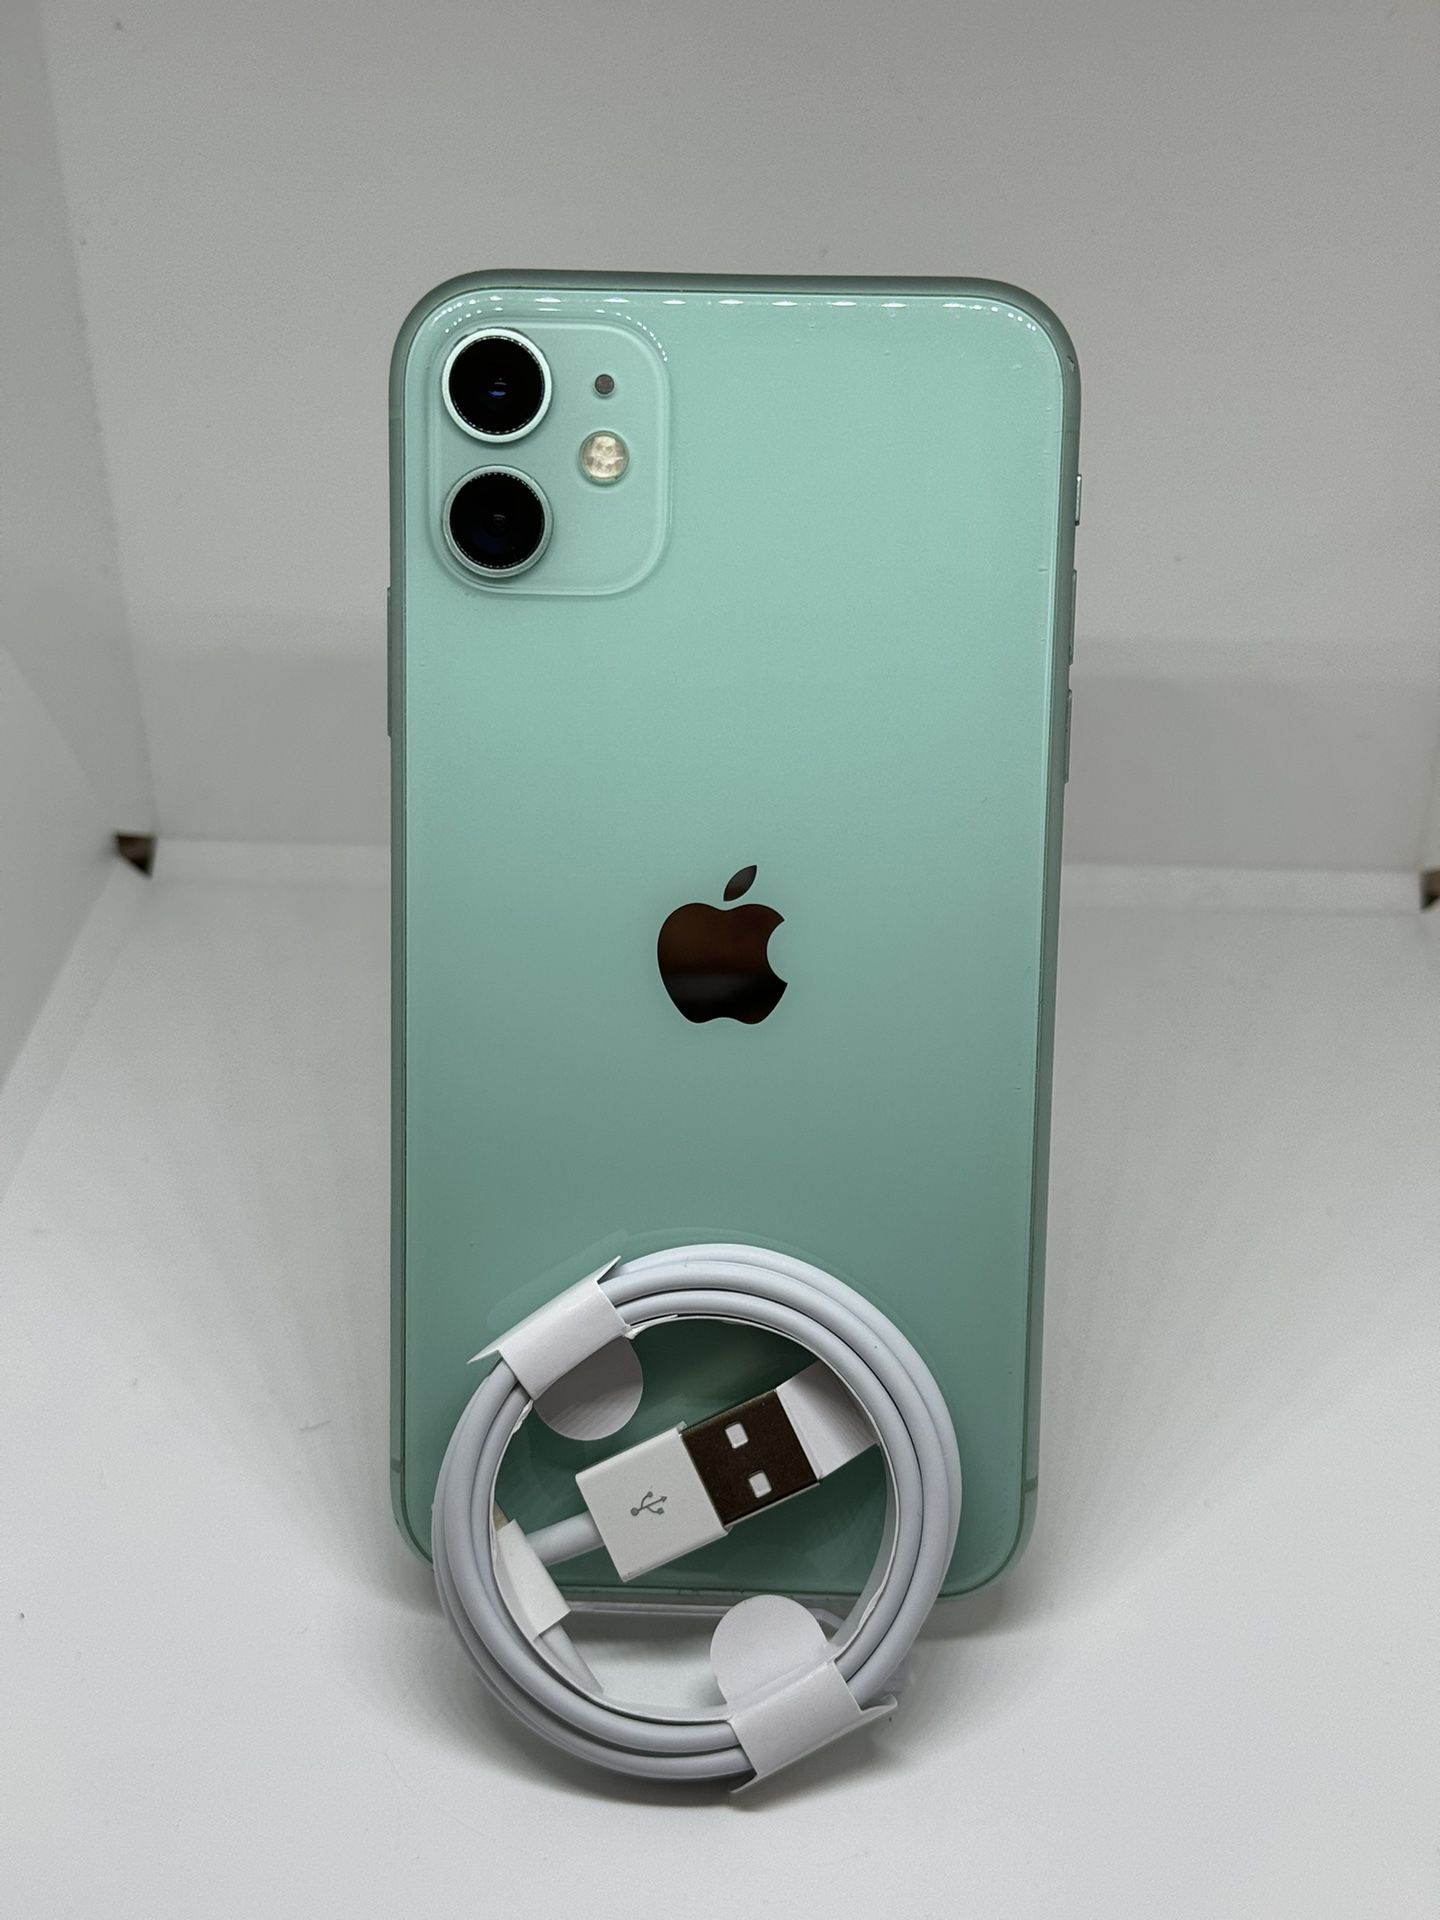 iPhone 11 64gb Mint Green Unlocked